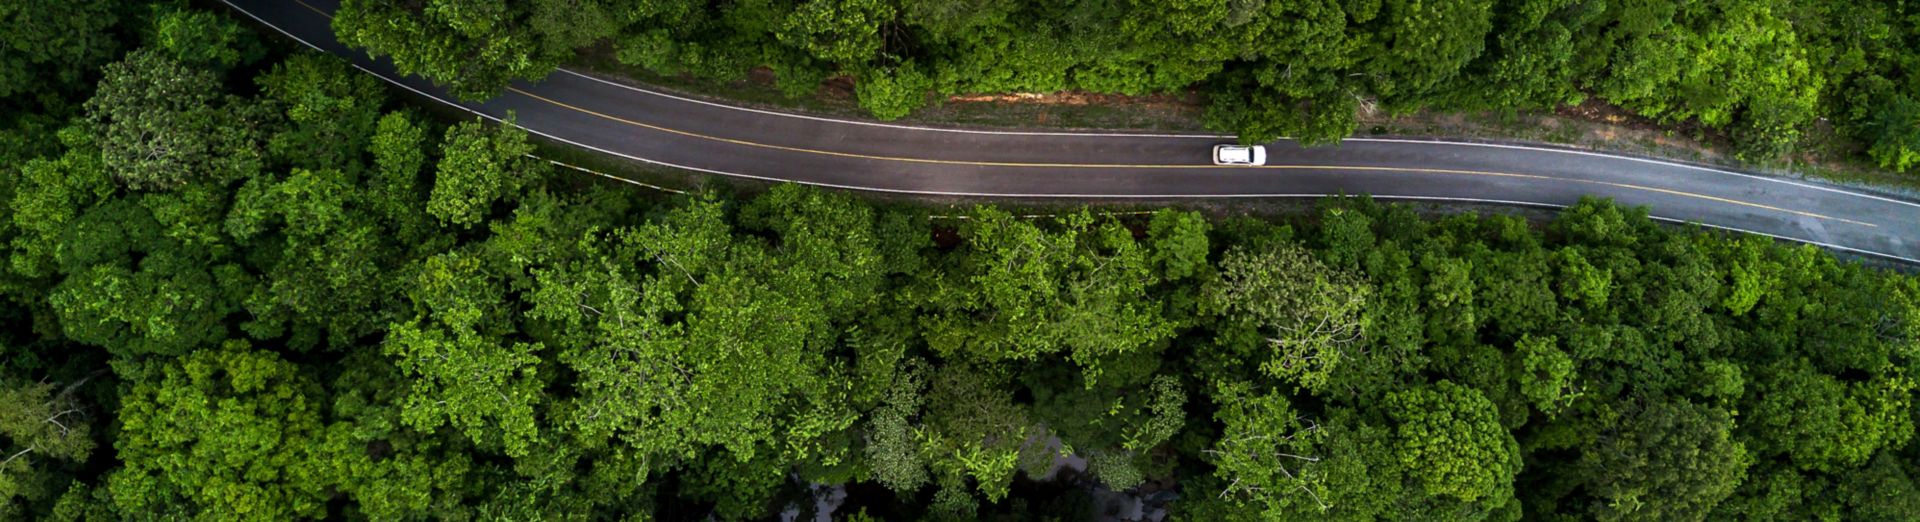 俯瞰图：柏油路和绿色森林，一辆汽车沿着穿过森林的道路行驶，象征生态系统和生态健康的环境理念与背景 